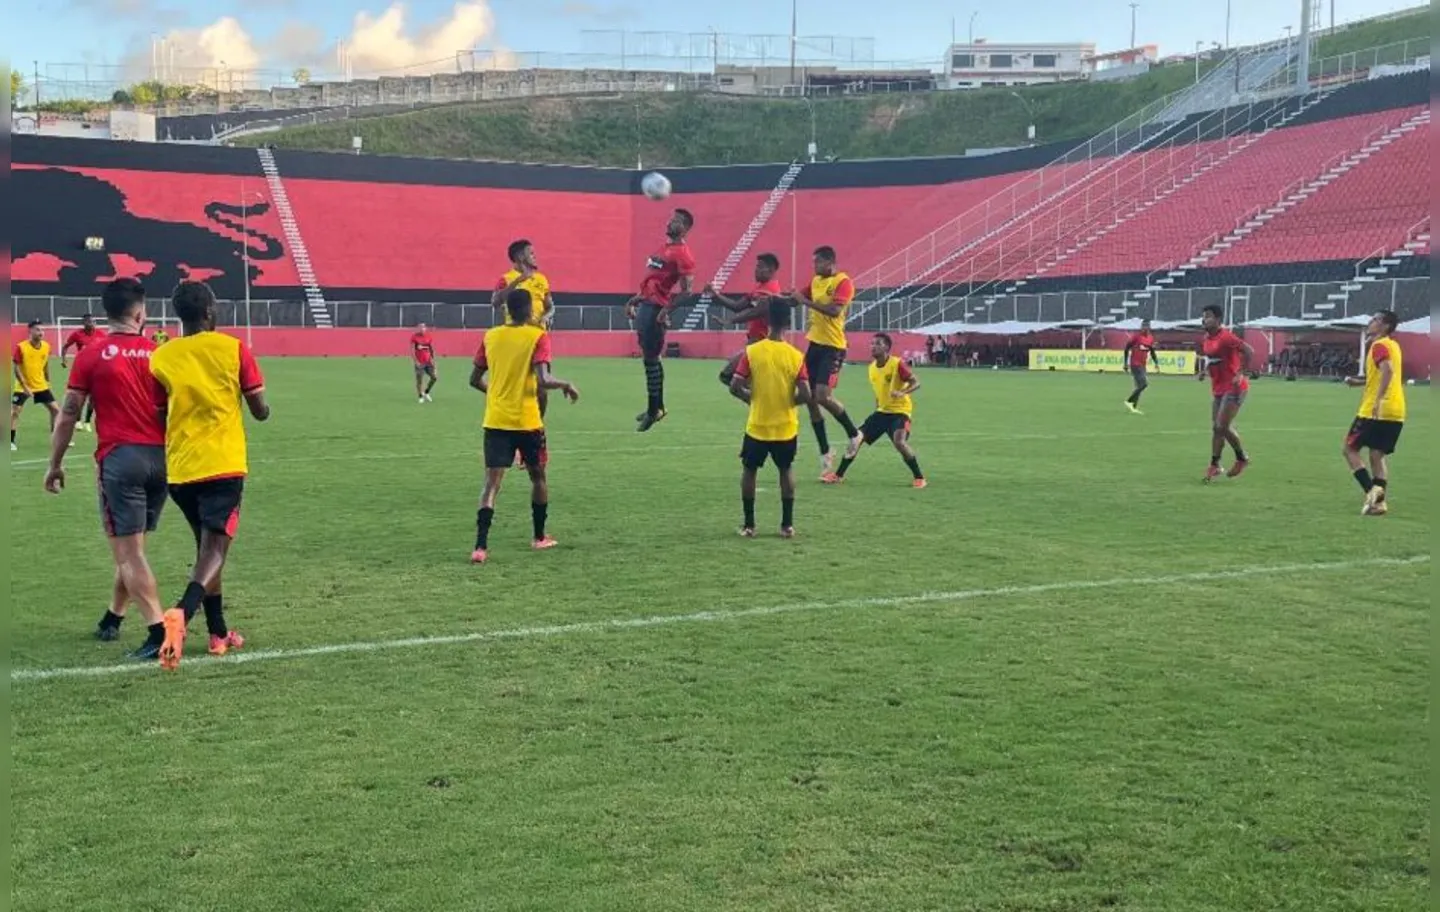 Gols foram marcados por Marco Antônio, Guilherme Queiroz, Carlos e Guilherme Kayron (contra), enquanto Charlys descontou para o sub-20